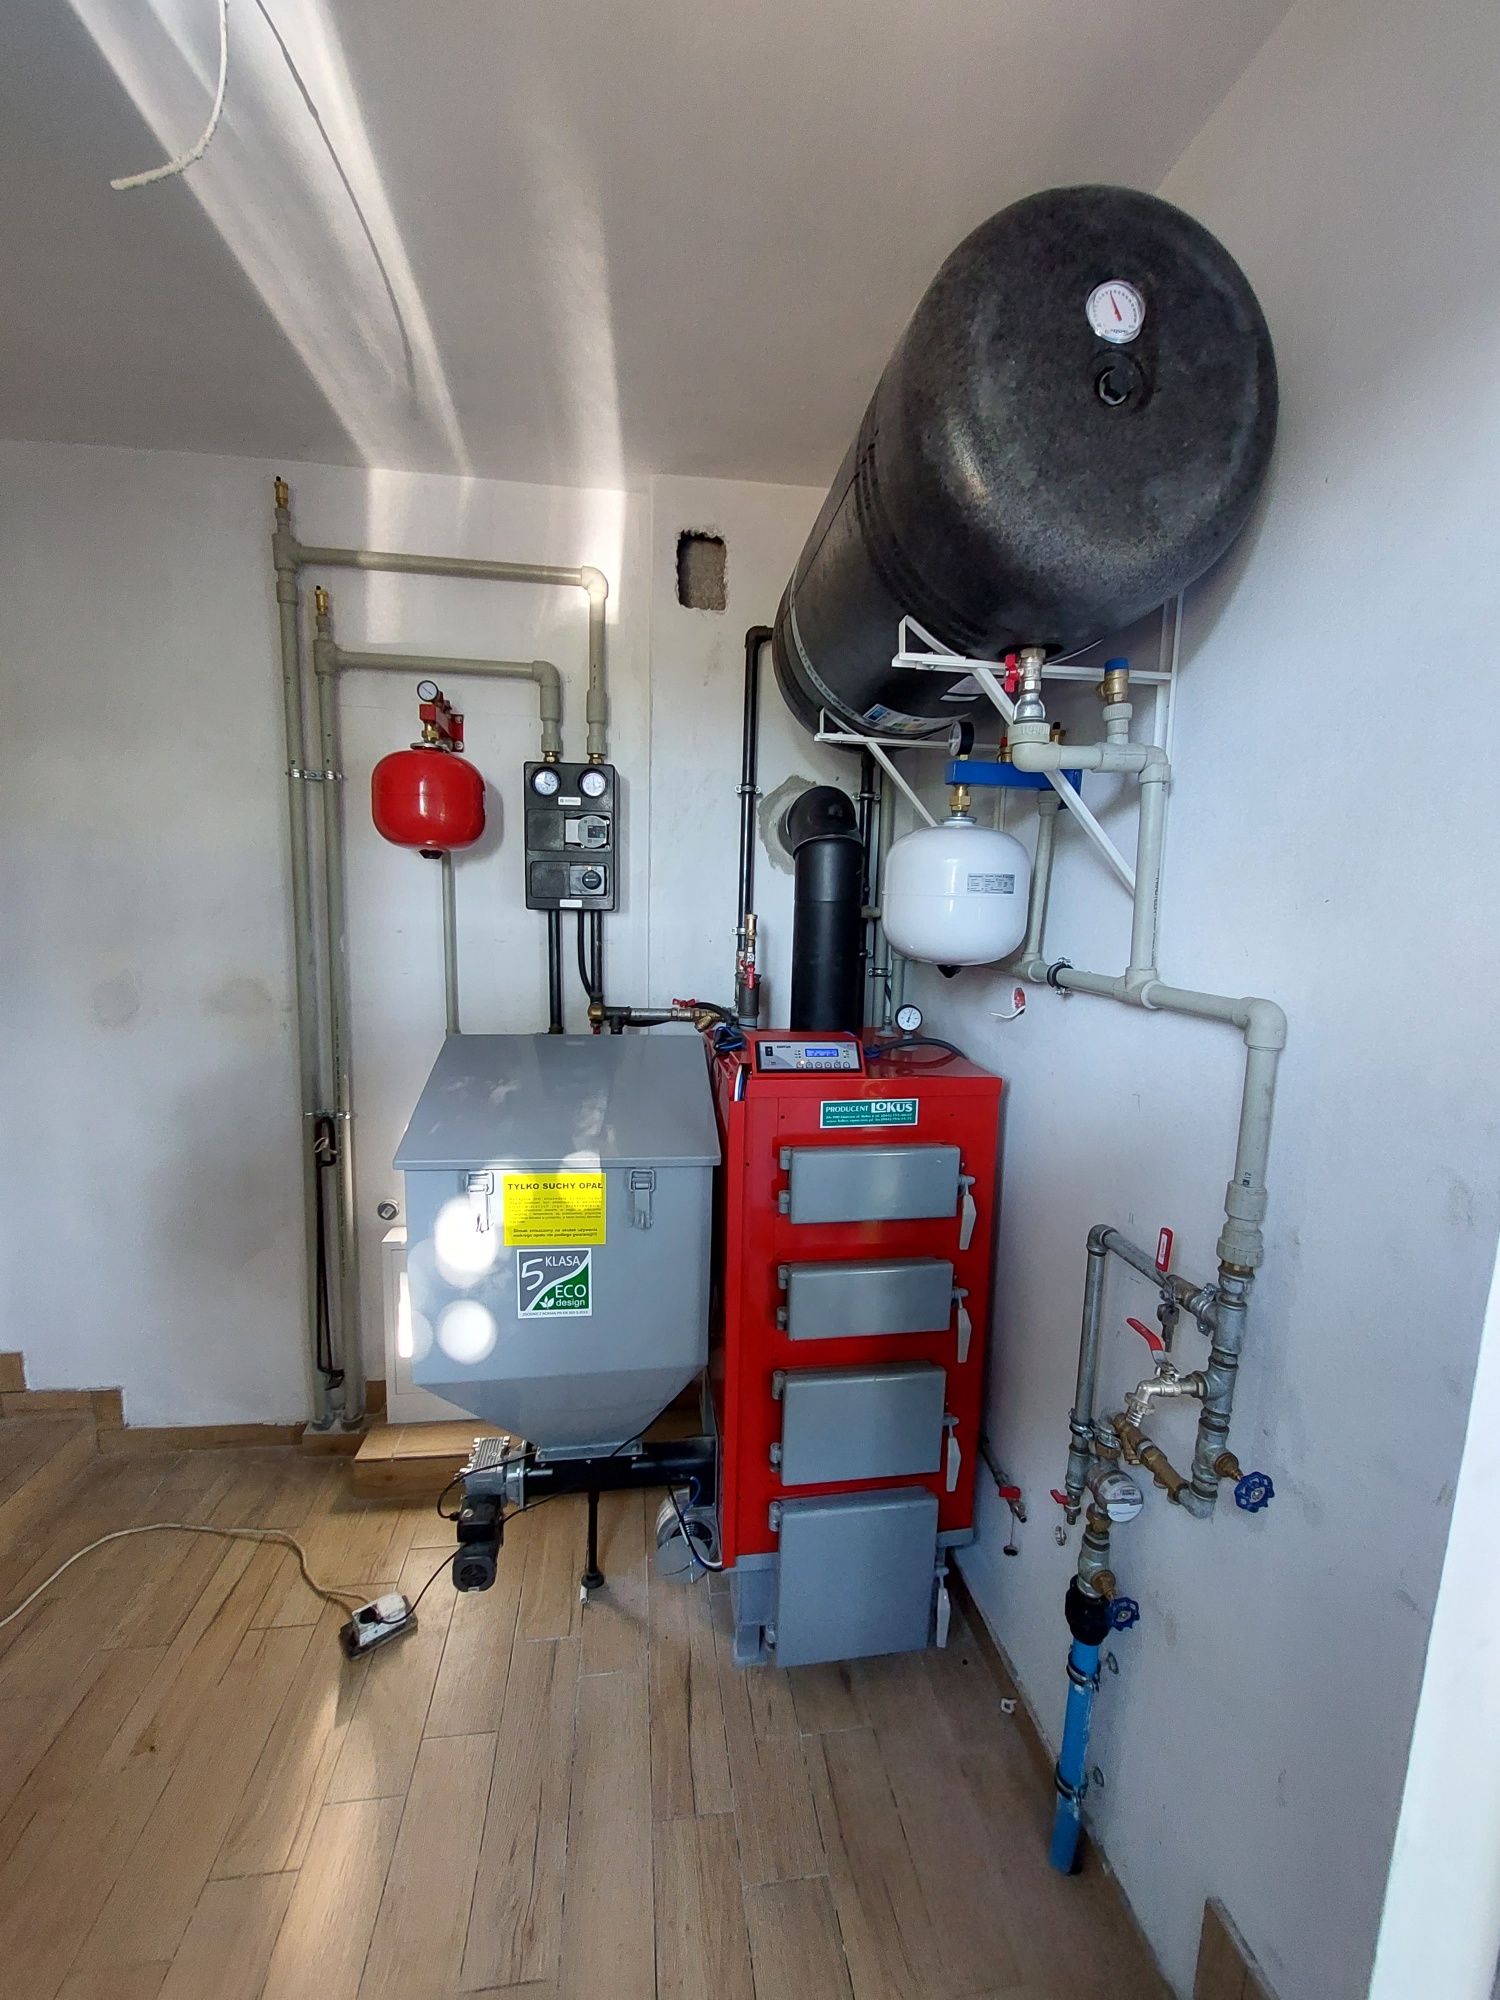 Usługi sanitarne elektryczne hydraulik elektryk przyłącza gaz woda